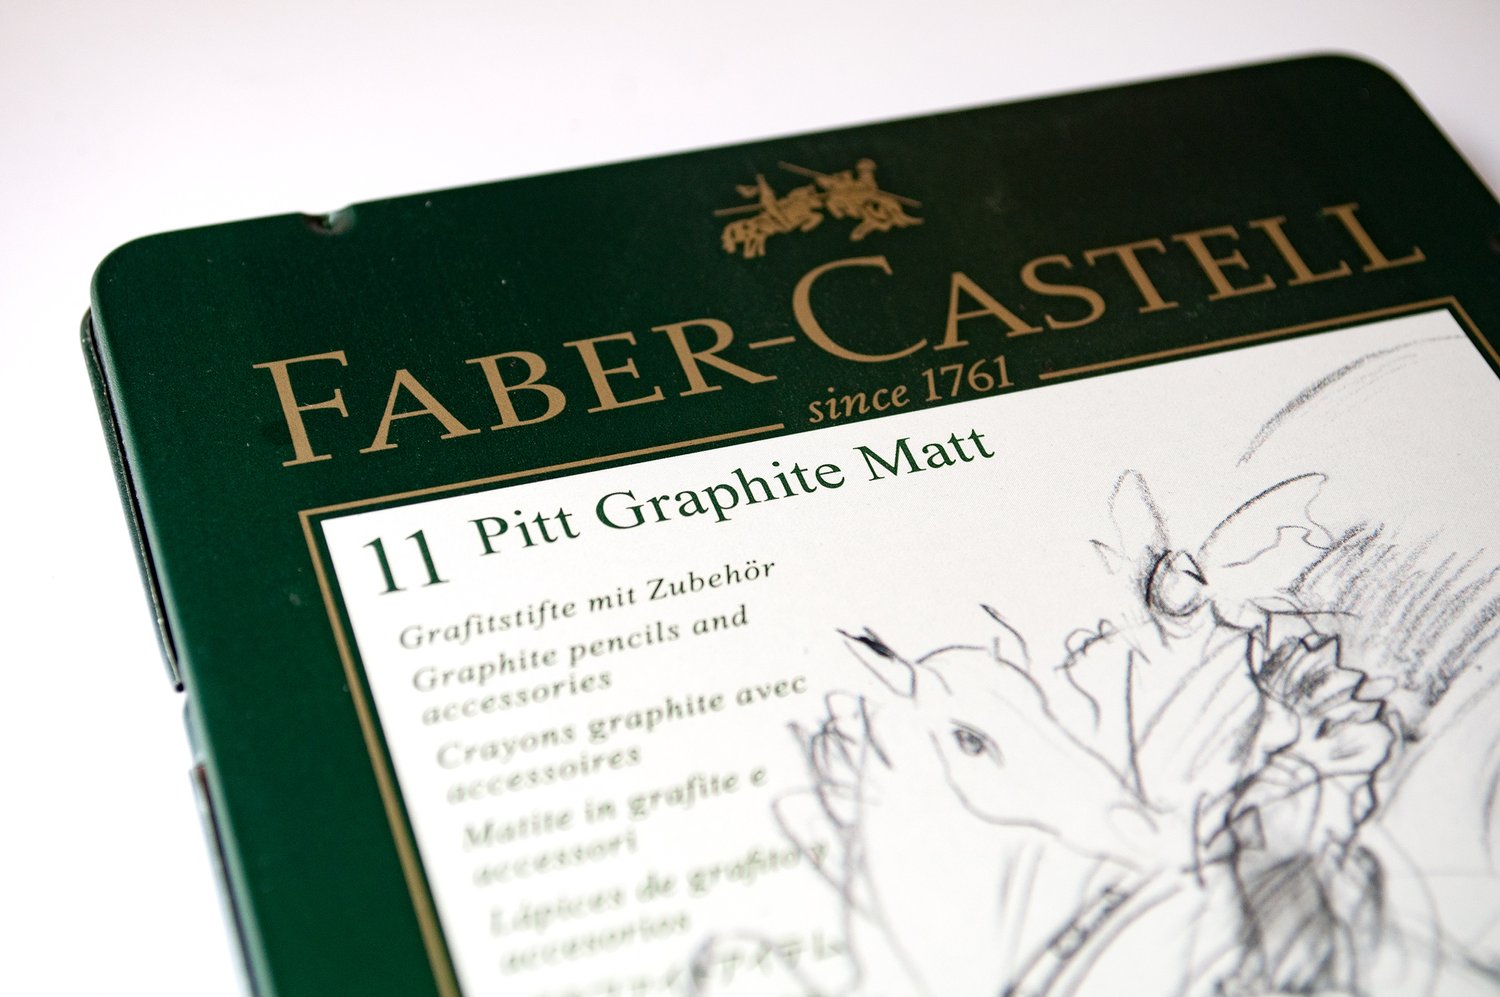 Faber Castell Pitt Graphite Matt Pencils Review | Faber Castell ...